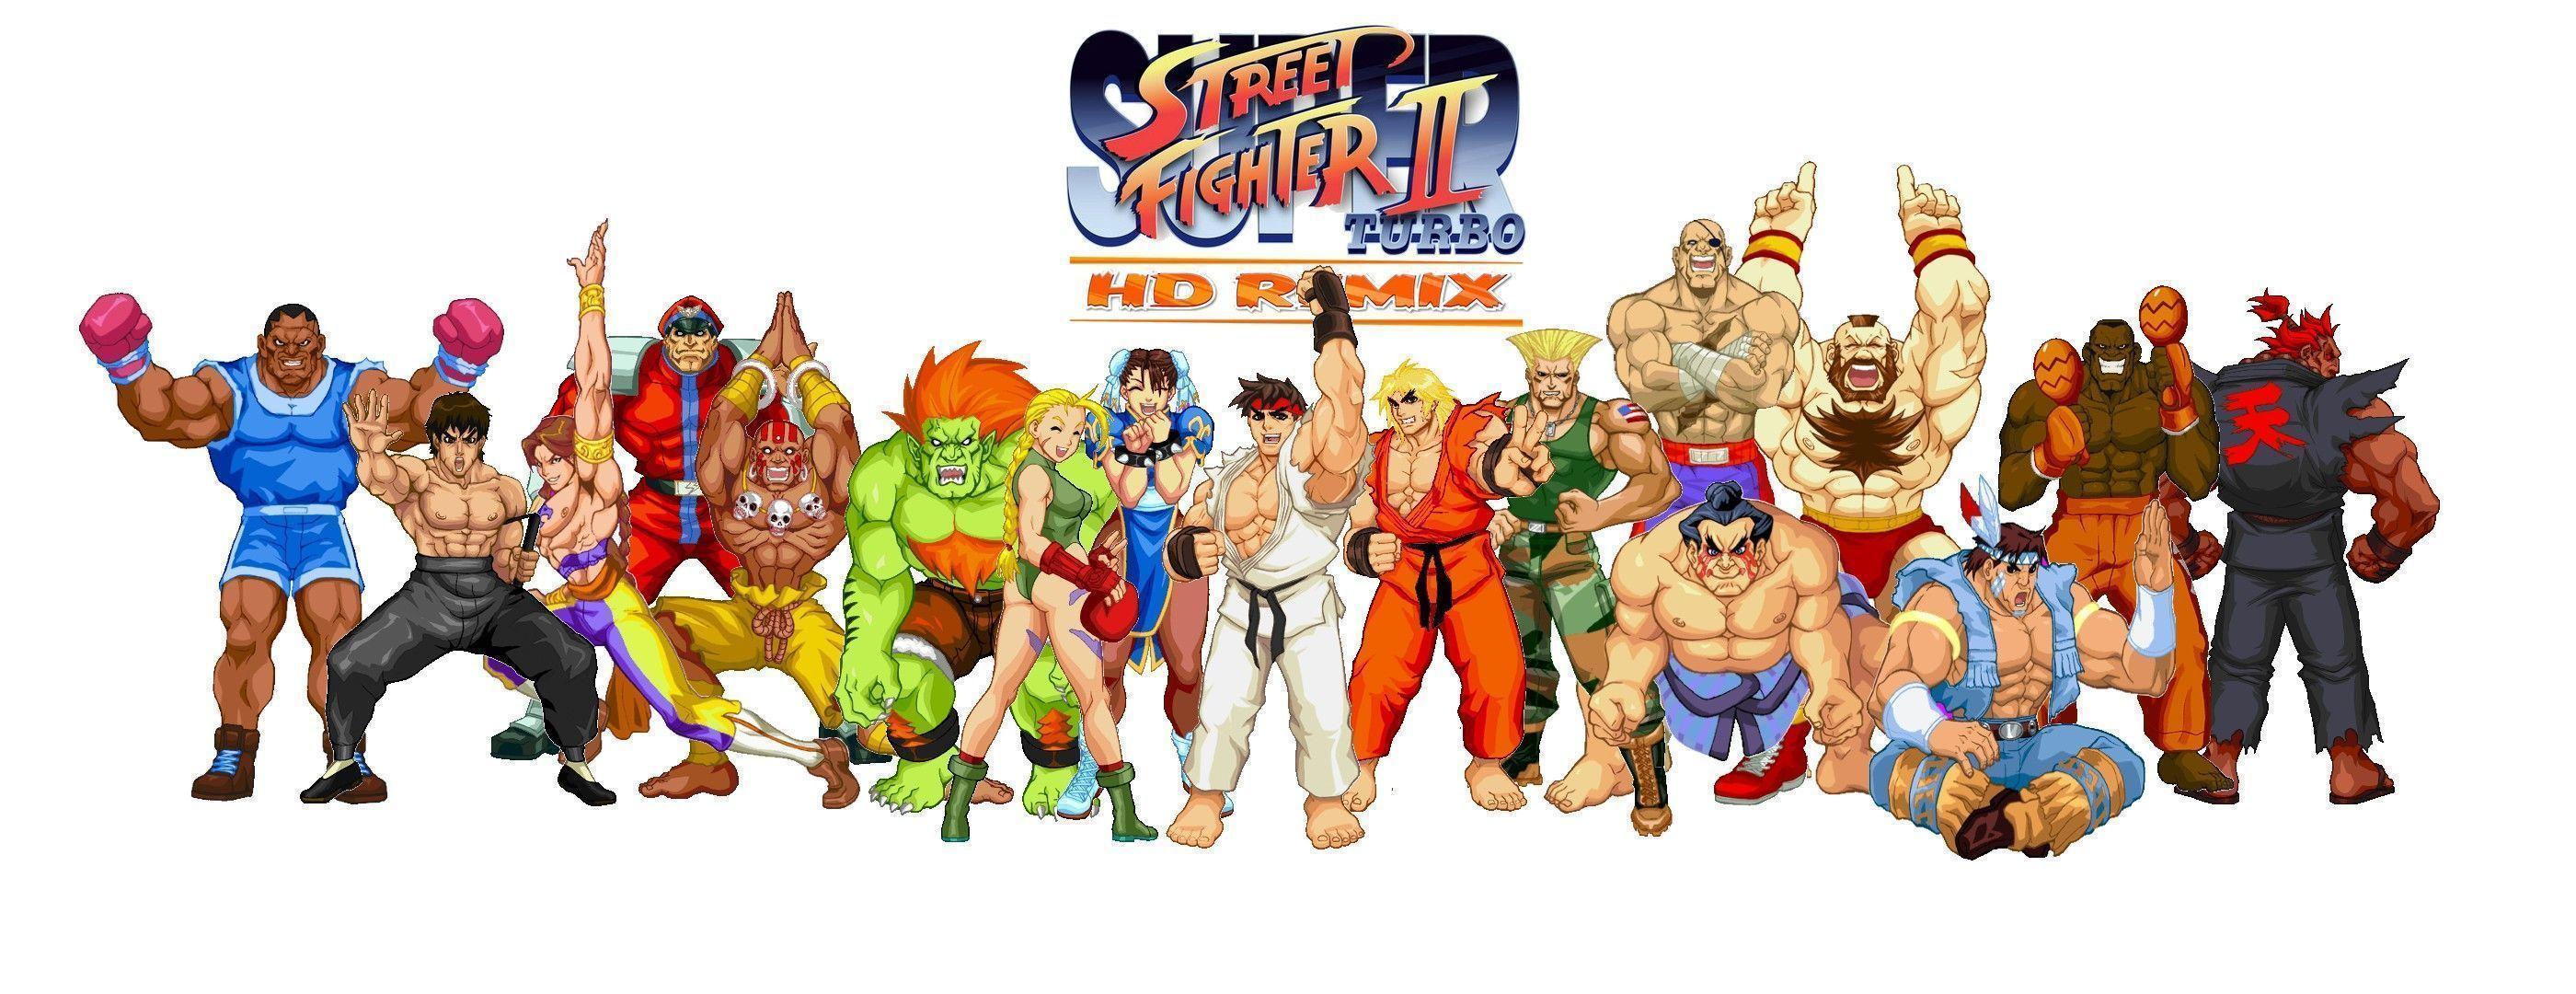 Super Street Fighter 2 turbo HD remix